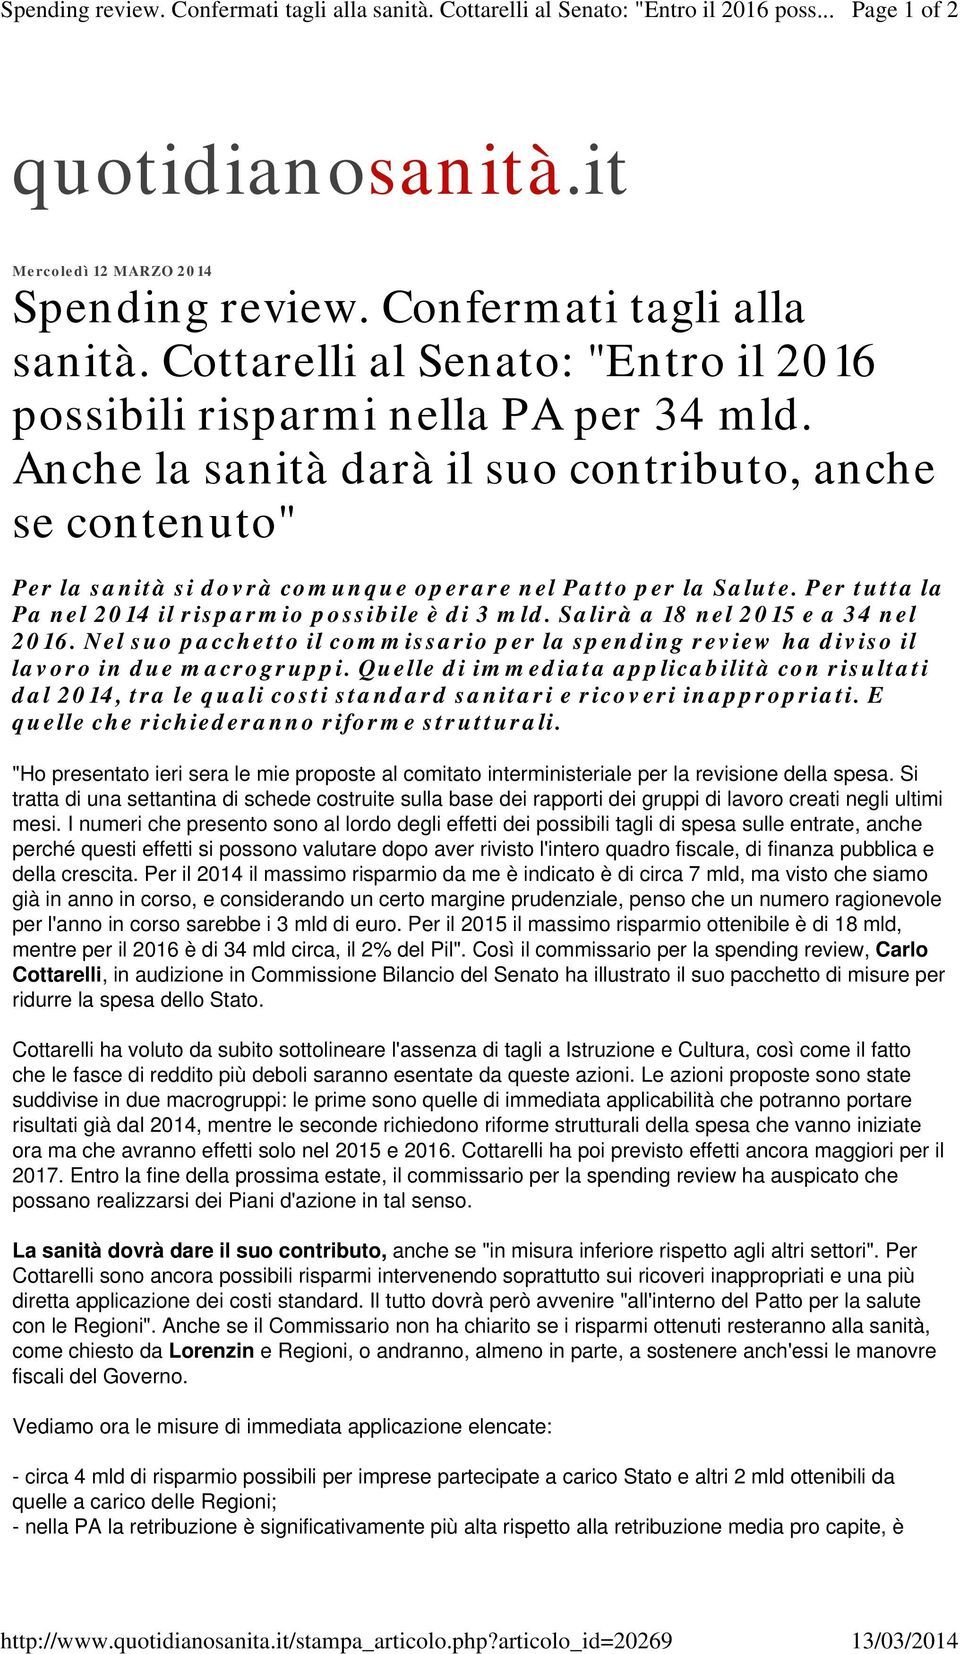 Cottarelli al Senato: "Entro il 2016 possibili risparmi nella PA per 34 mld.